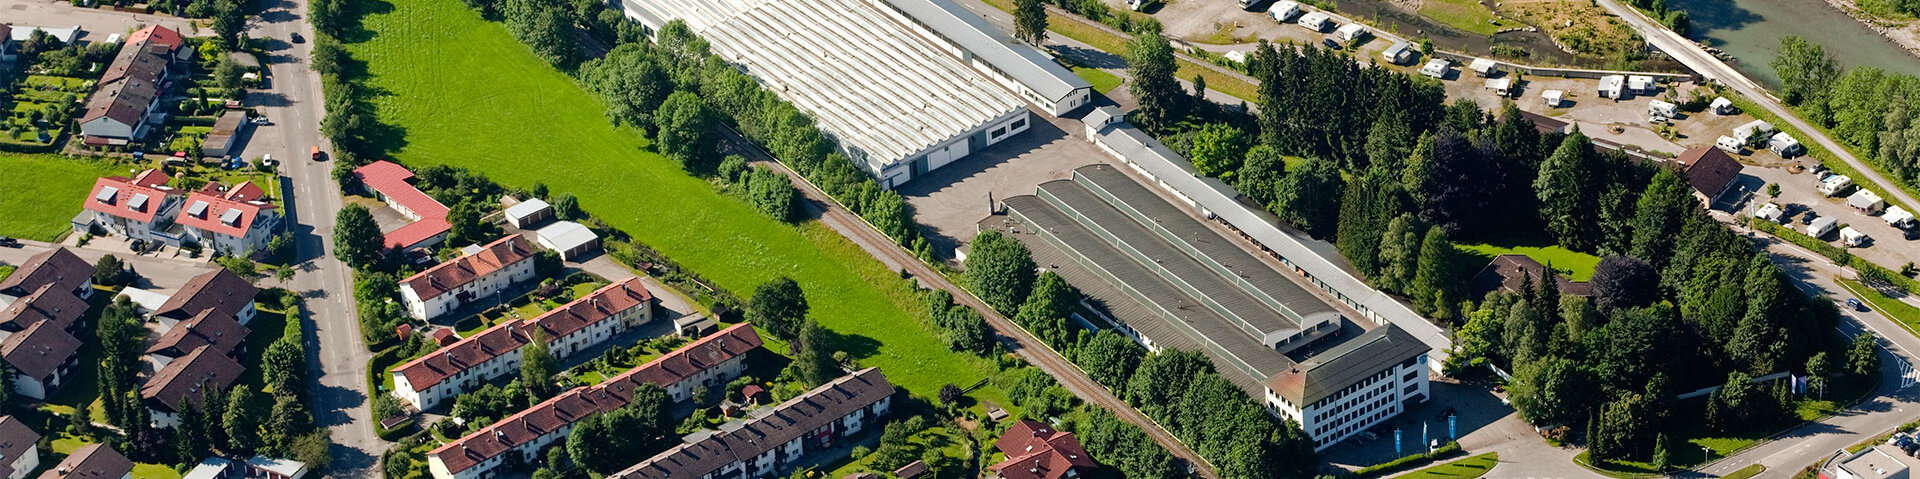 Das RÖHRS Produktionsgebäude in Sonthofen von oben.